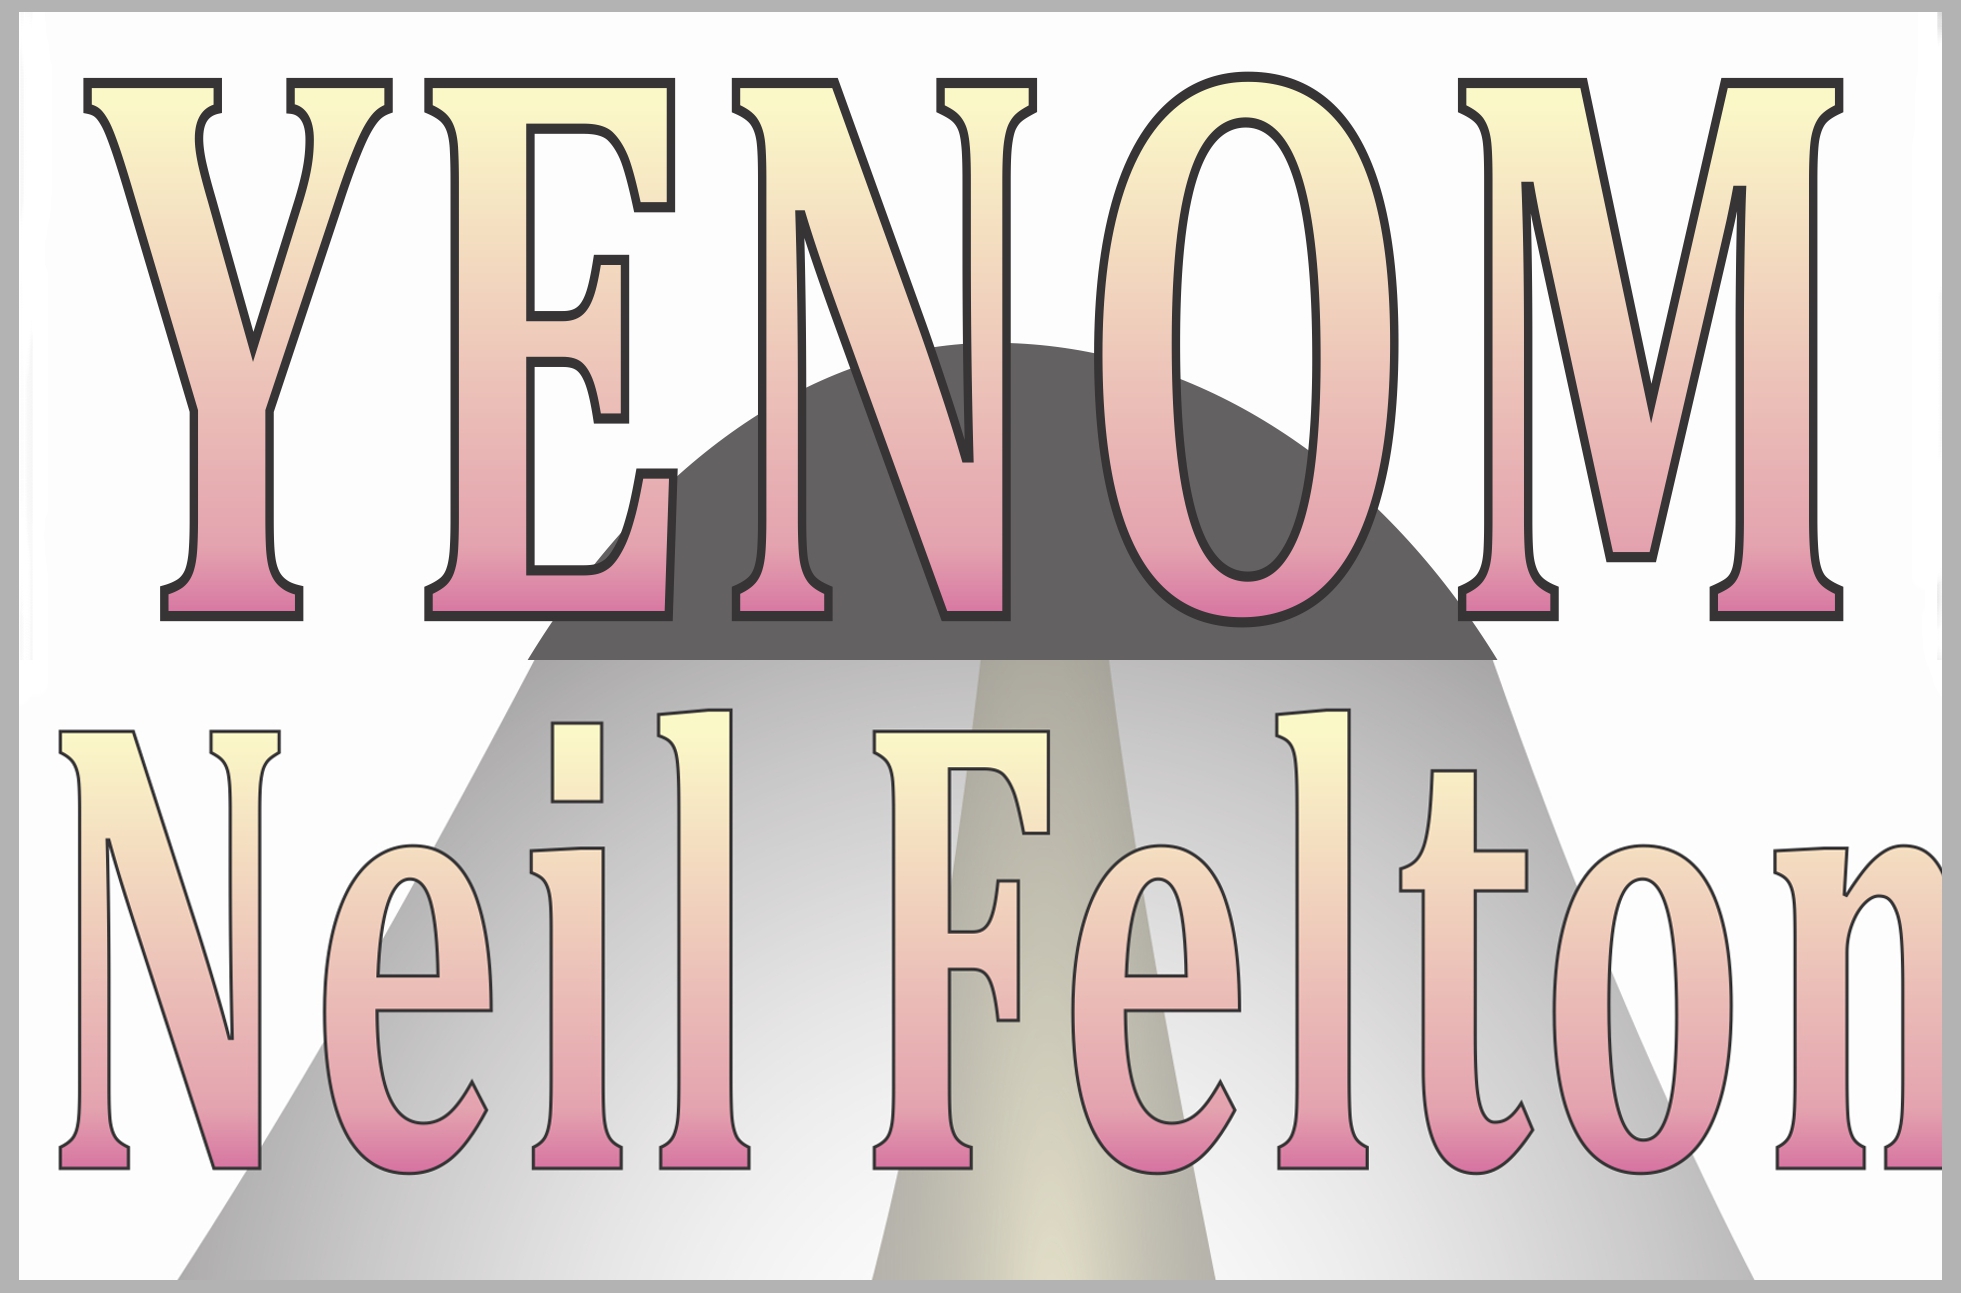 Yenom the novel by Neil Felton